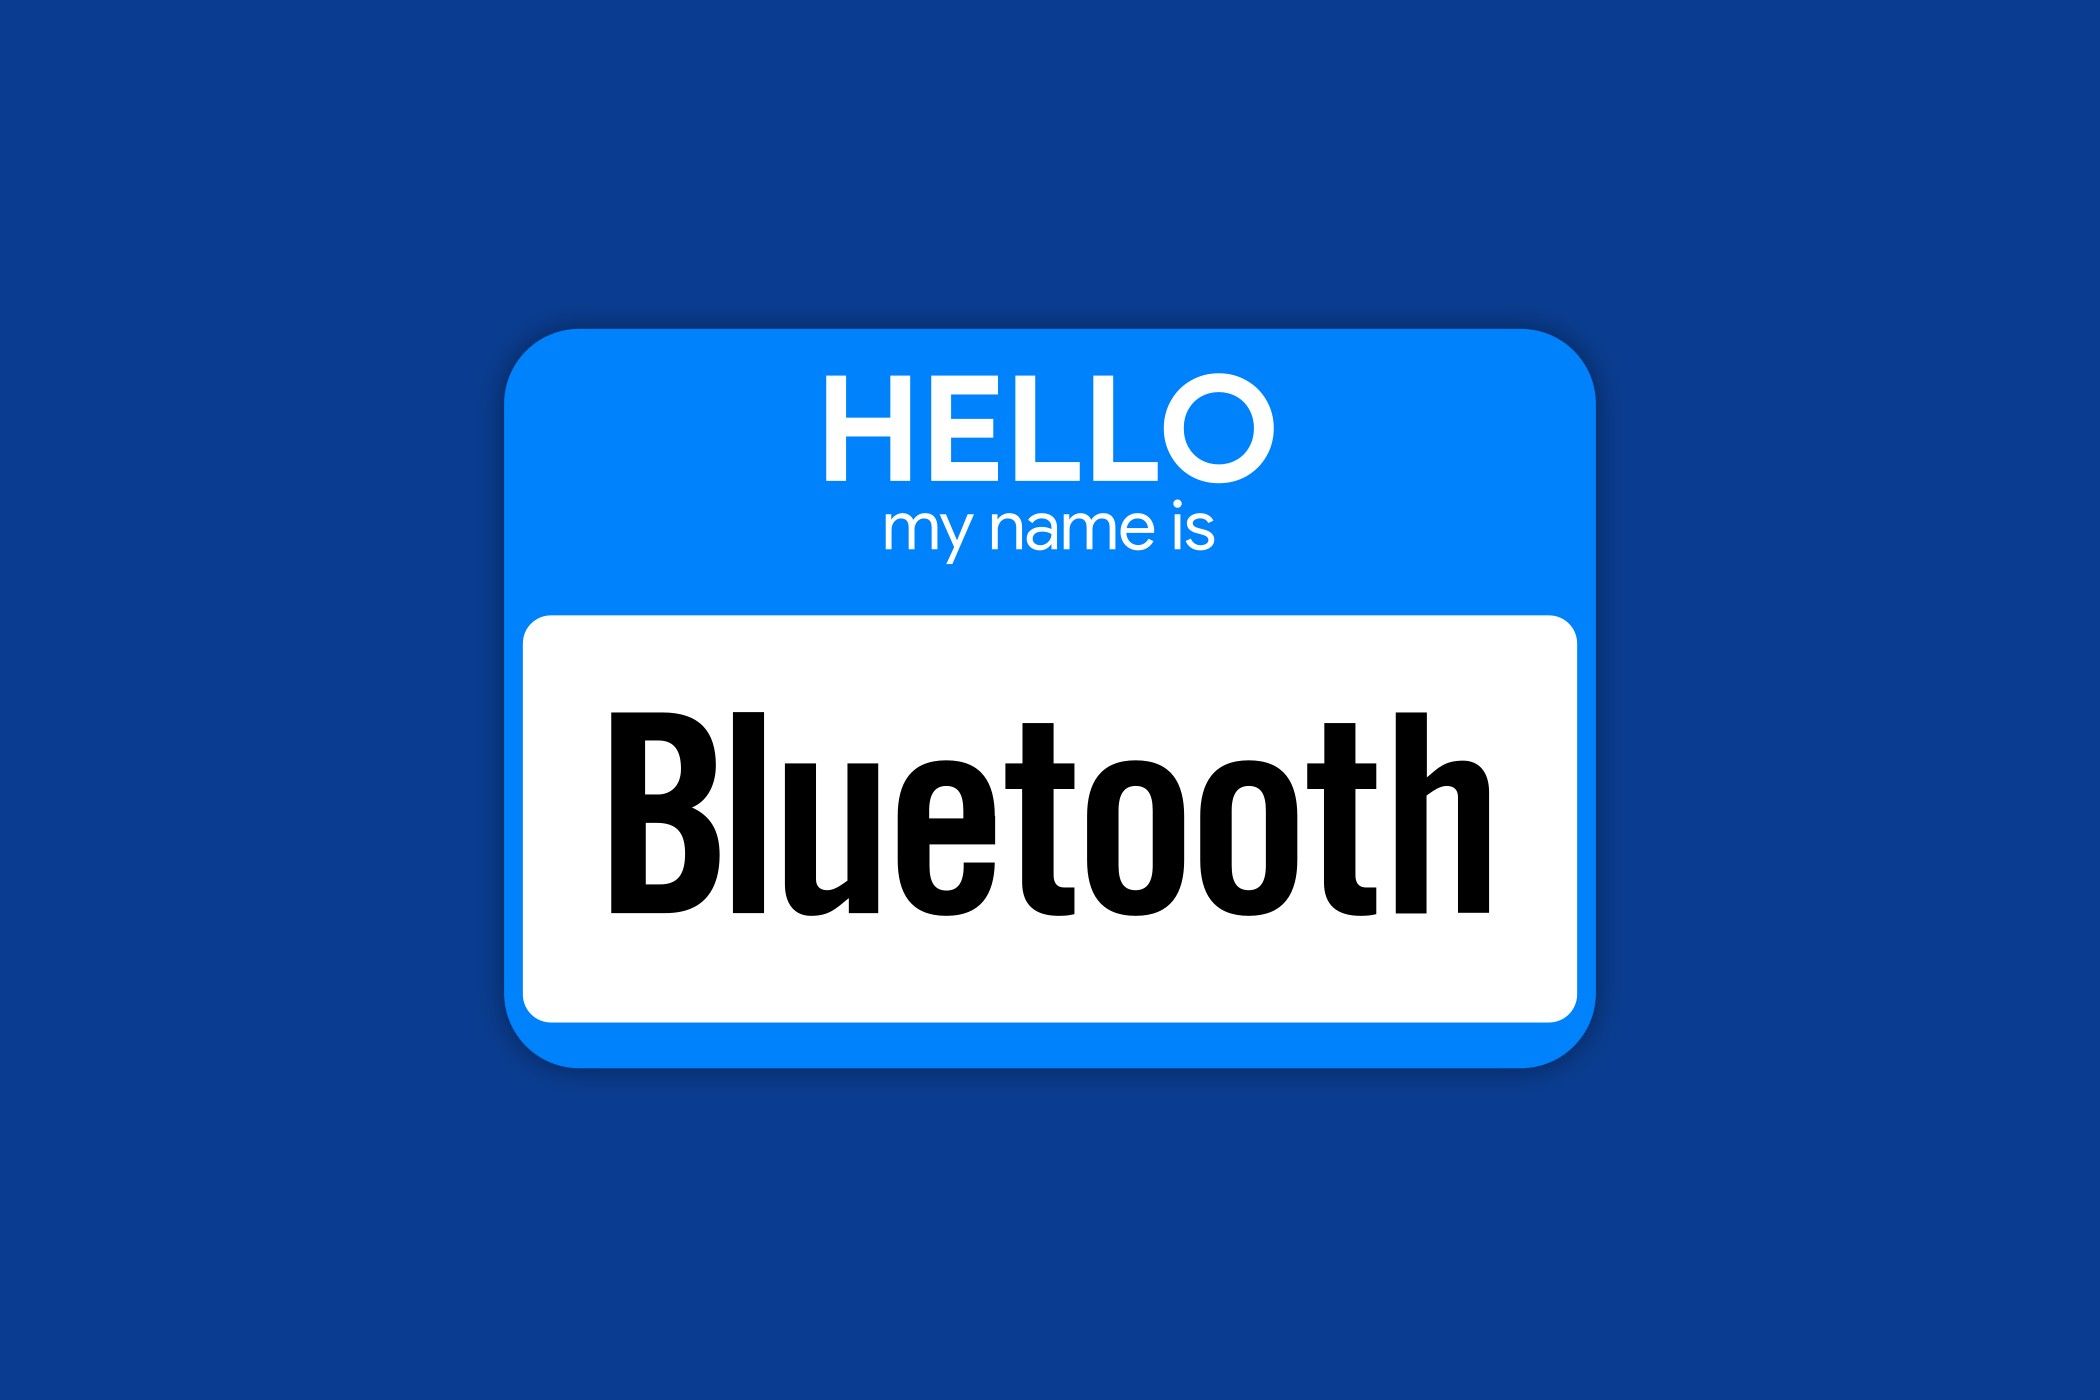 Bluetooth nametag.